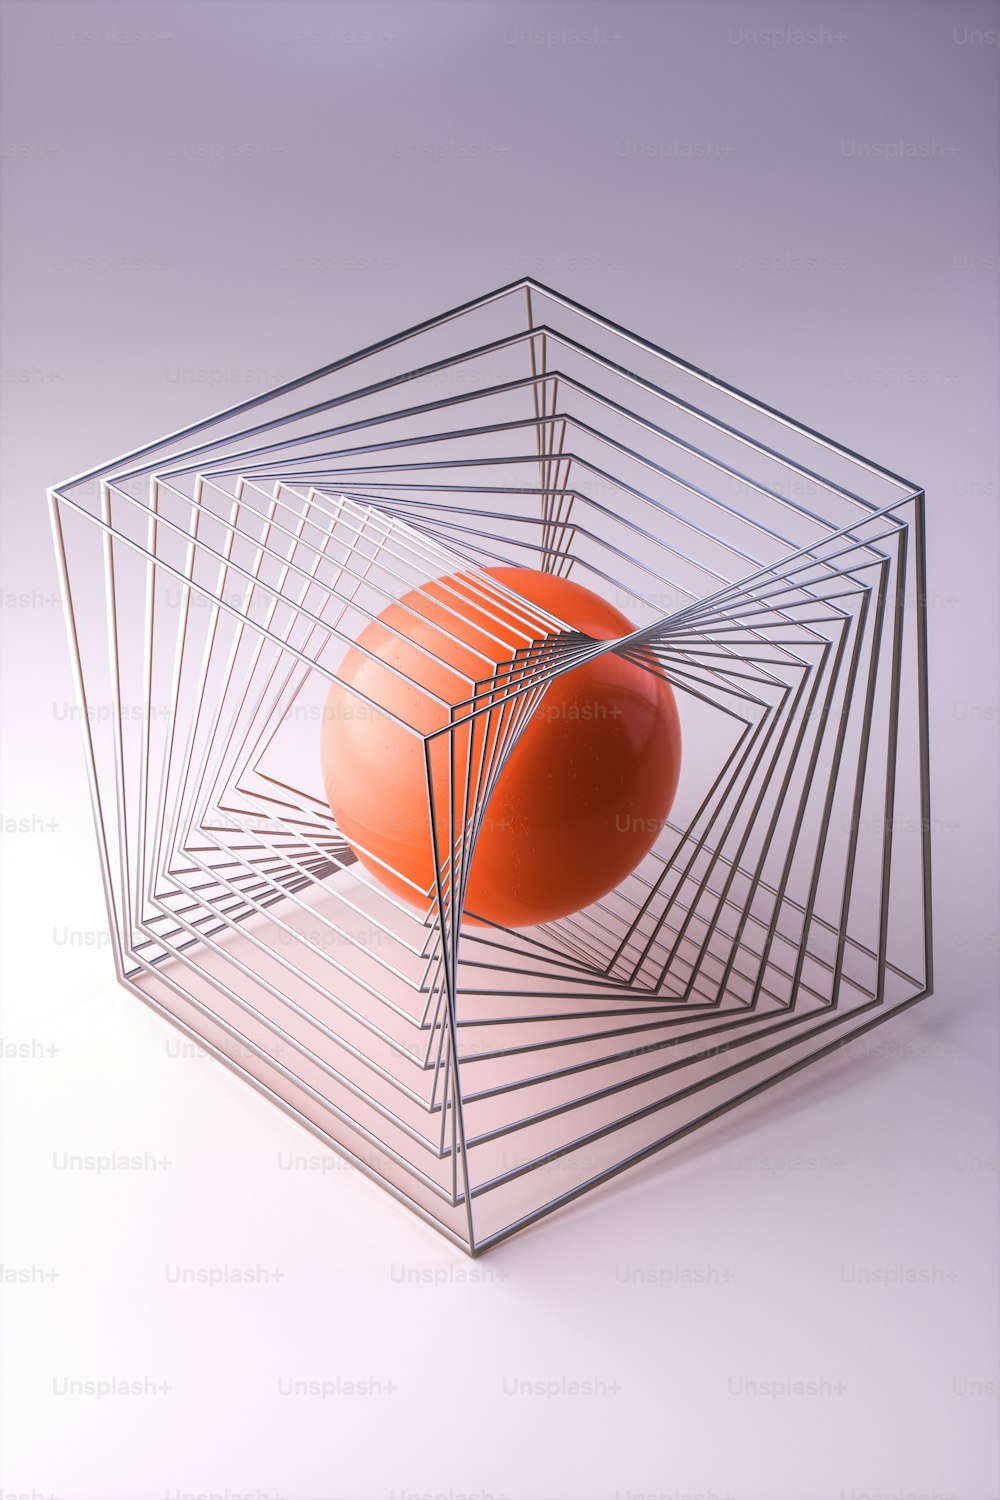 an orange ball sitting in a metal basket